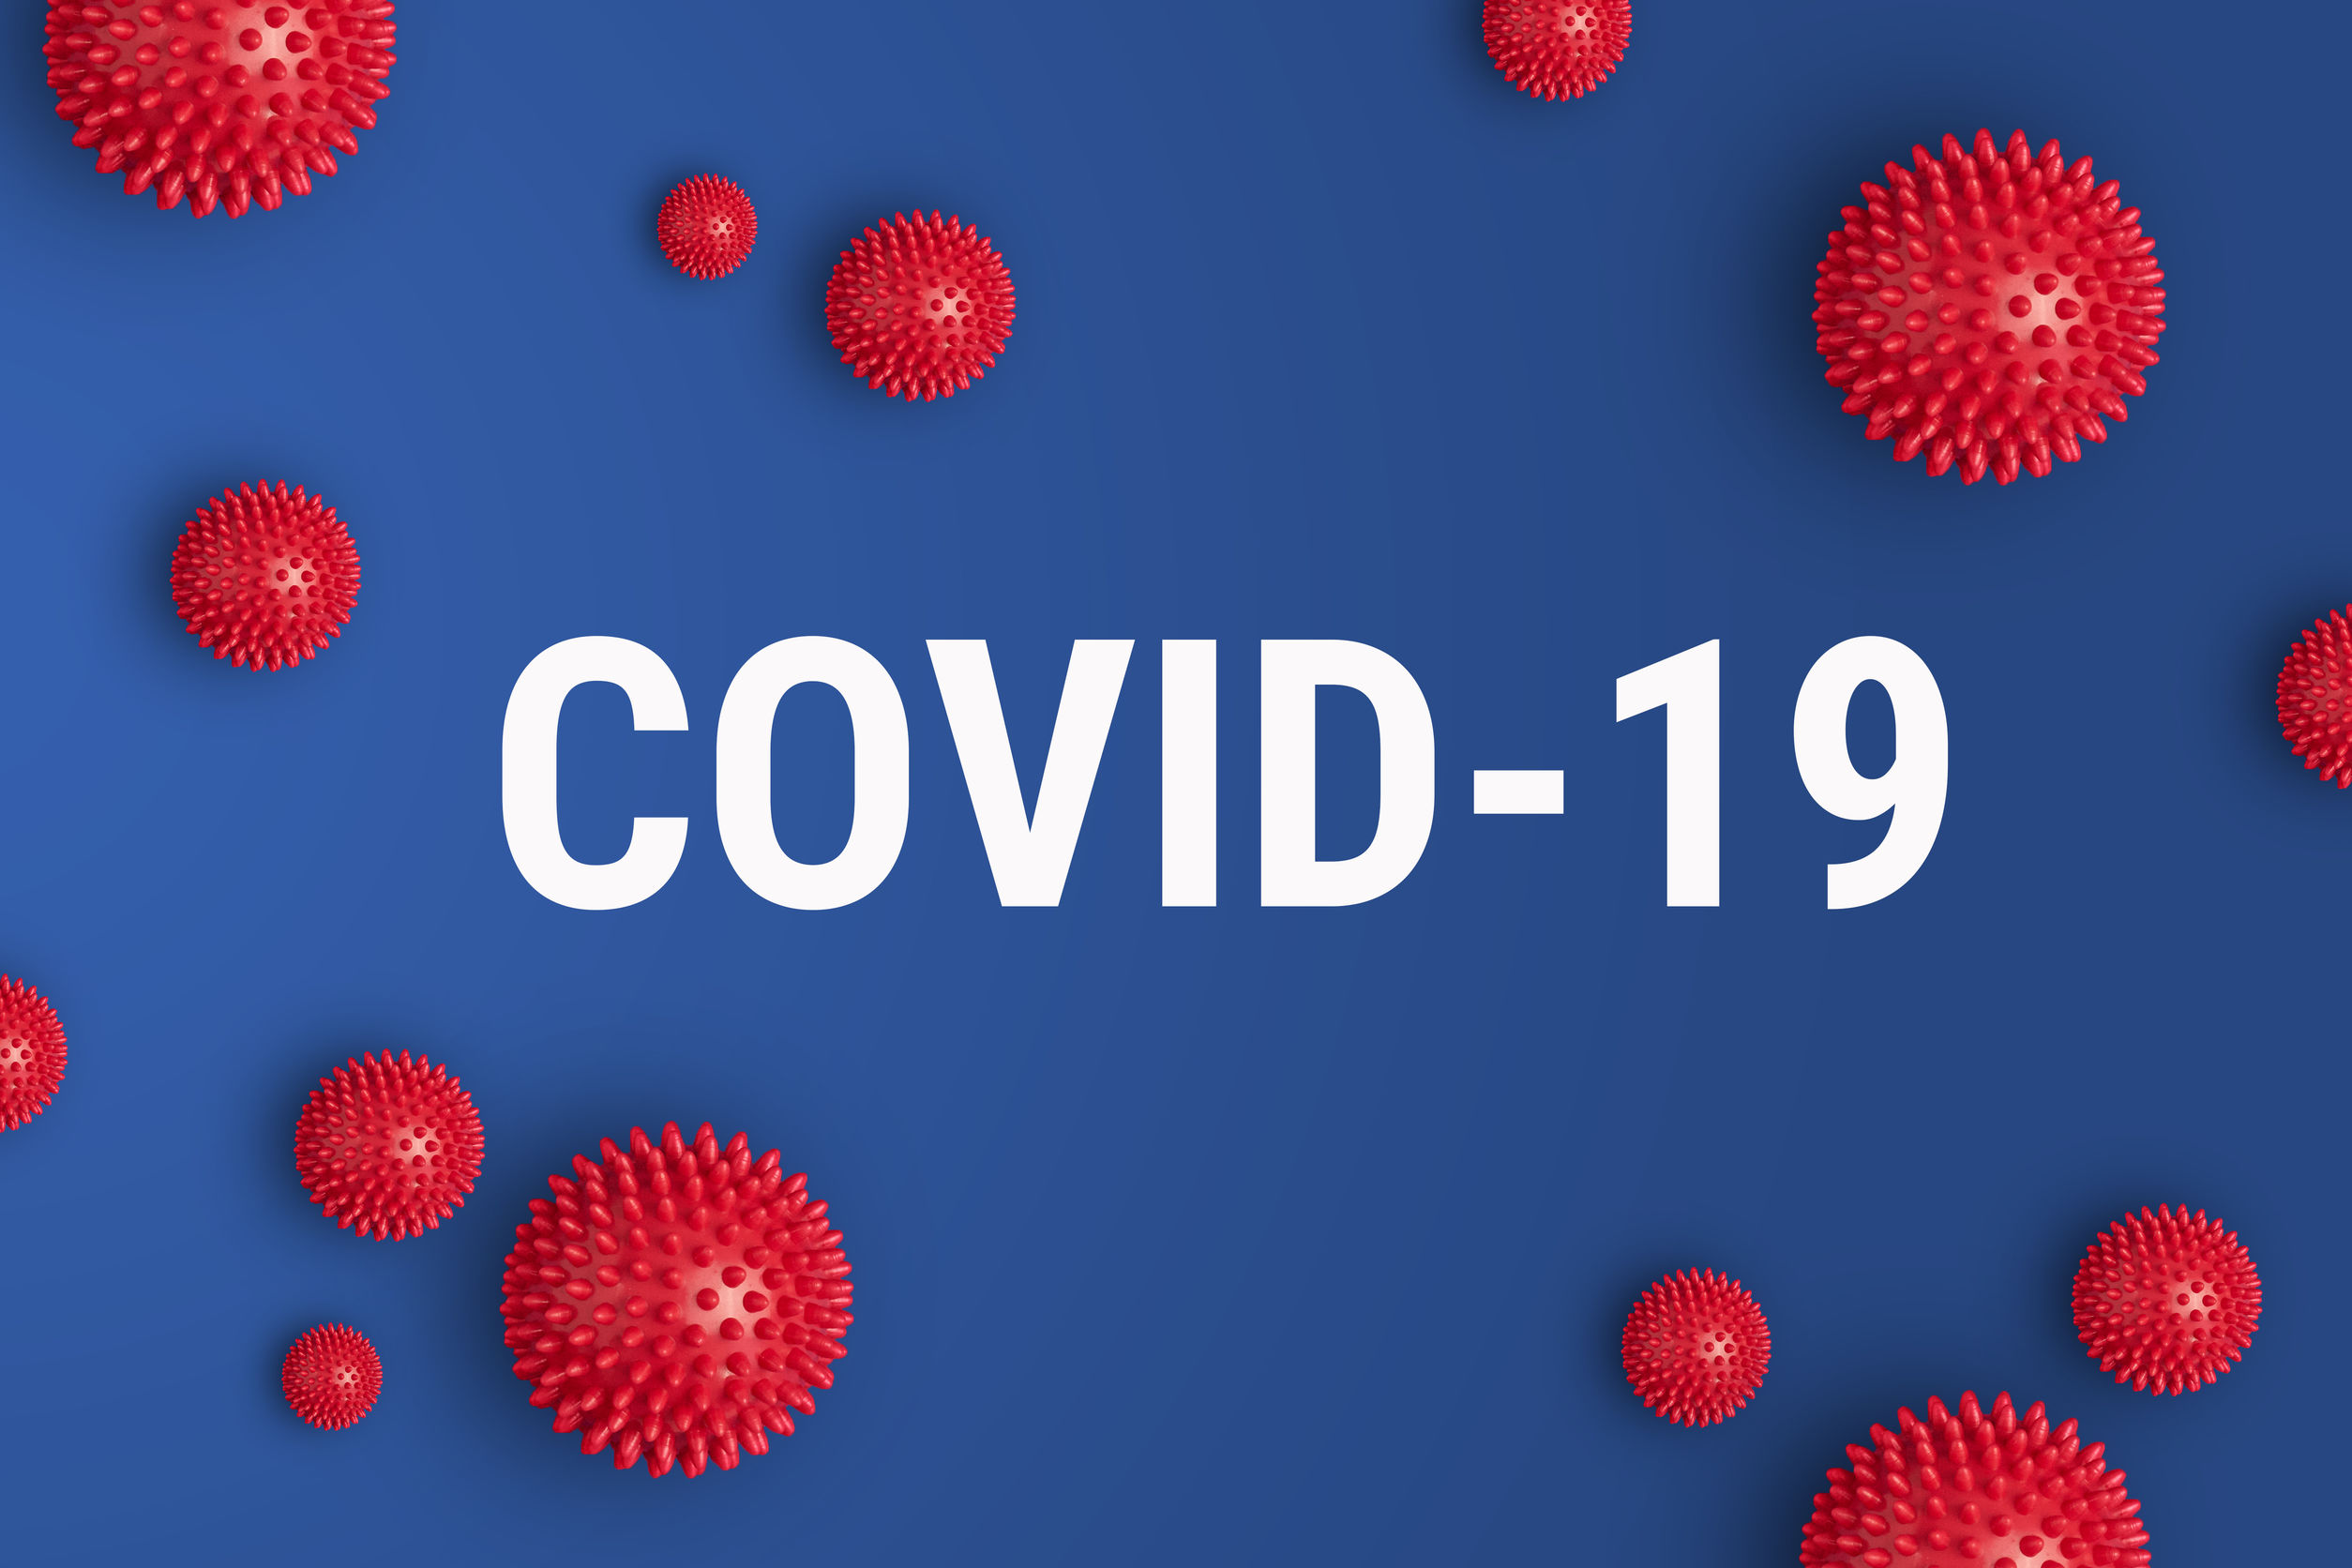 COVID-19 COMPLAINTS